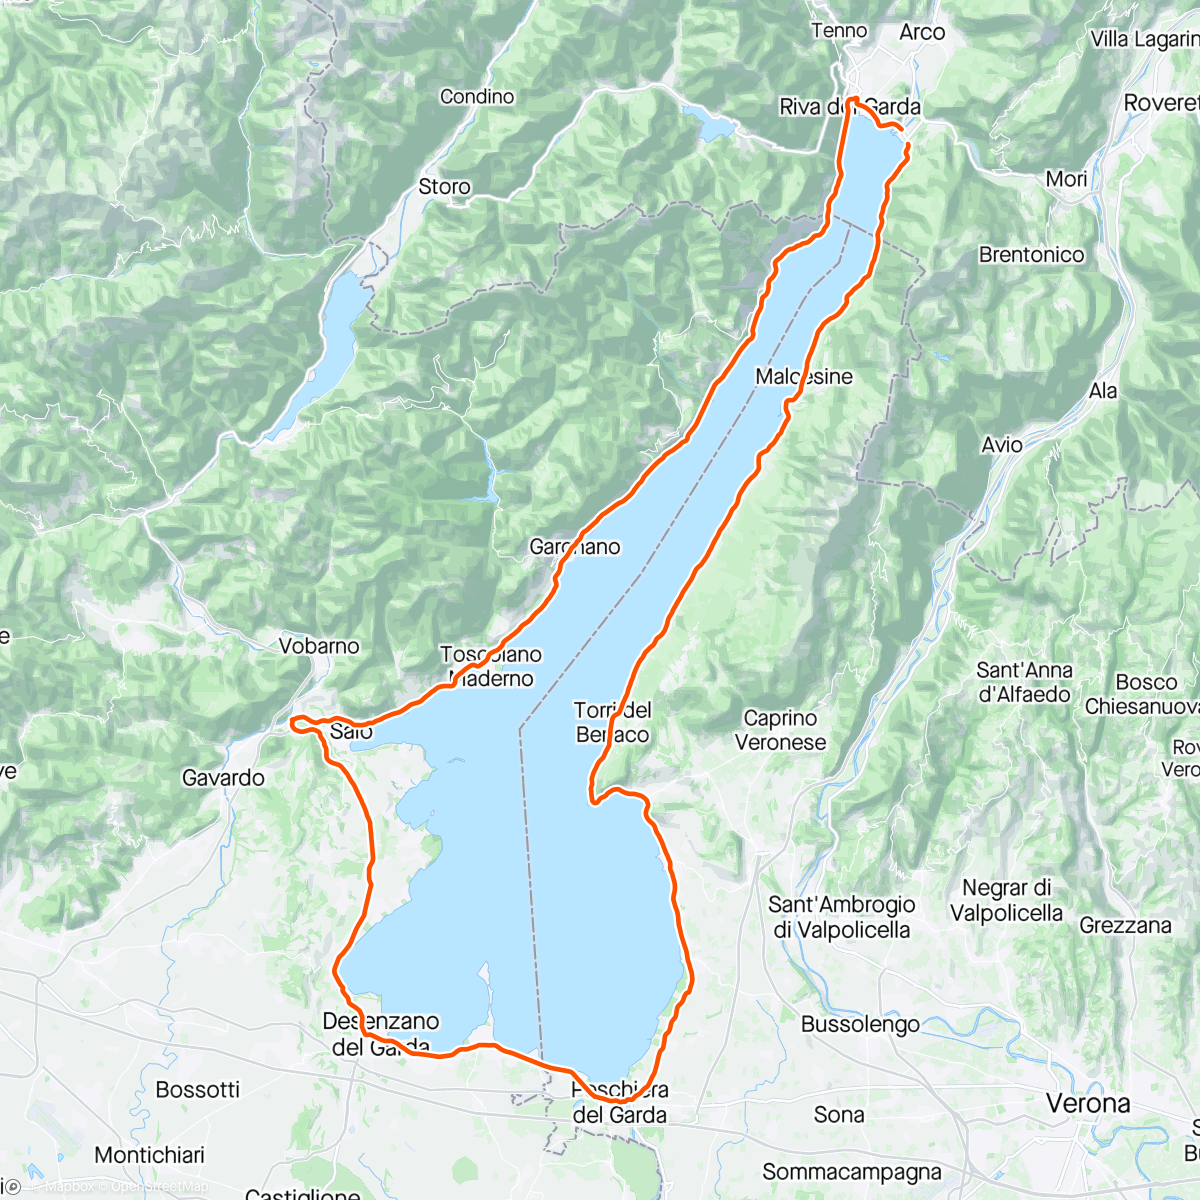 「Fahrt am Morgen um den Lago」活動的地圖